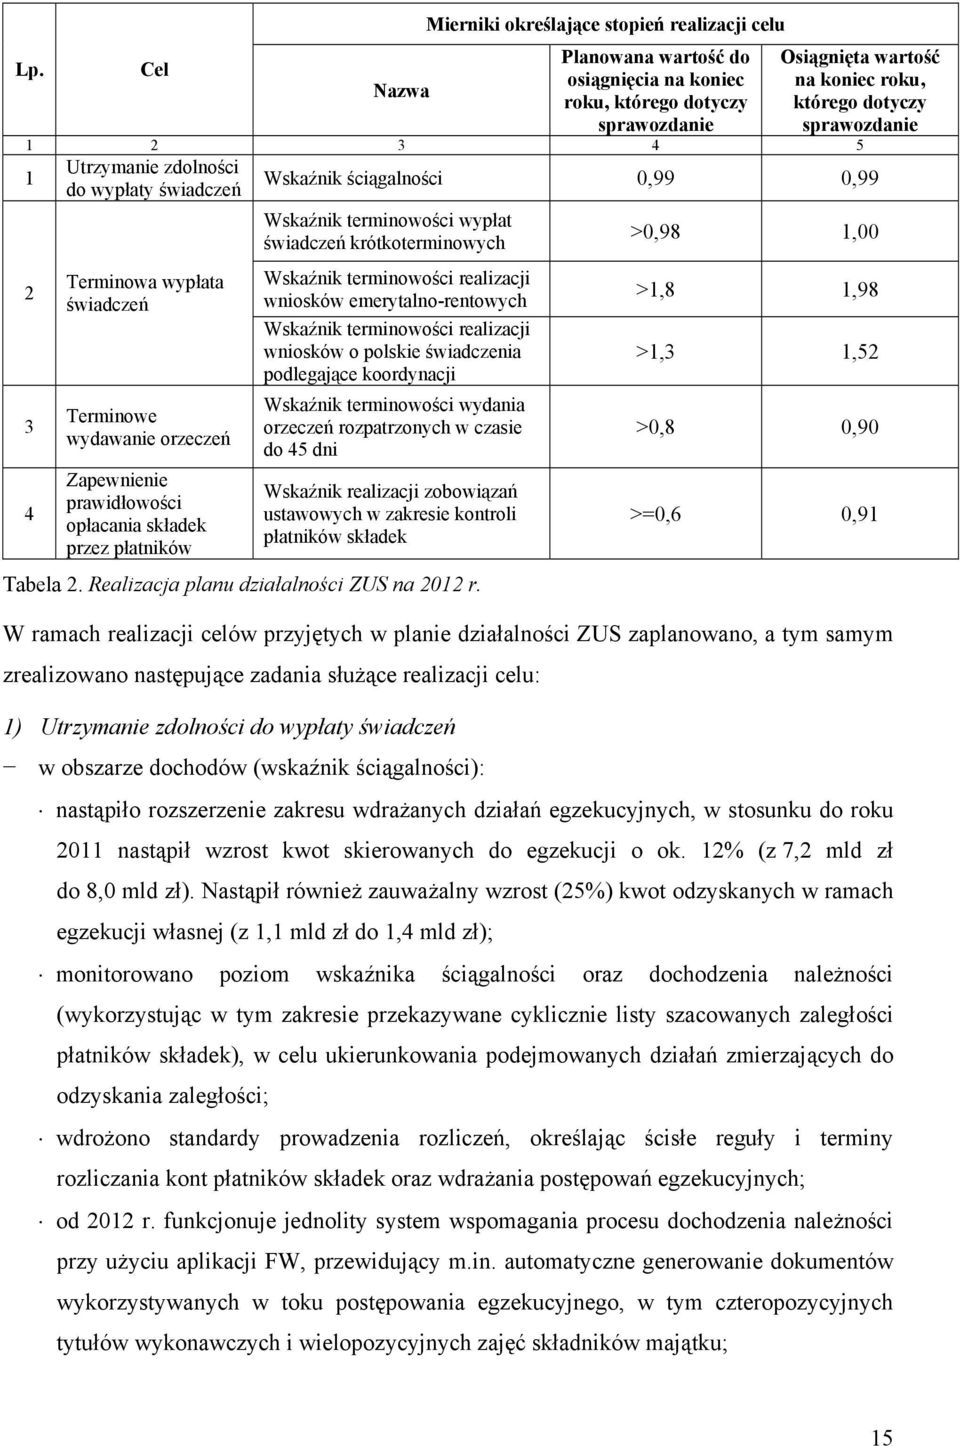 ściągalności 0,99 0,99 Wskaźnik terminowości wypłat świadczeń krótkoterminowych Wskaźnik terminowości realizacji wniosków emerytalno-rentowych Wskaźnik terminowości realizacji wniosków o polskie